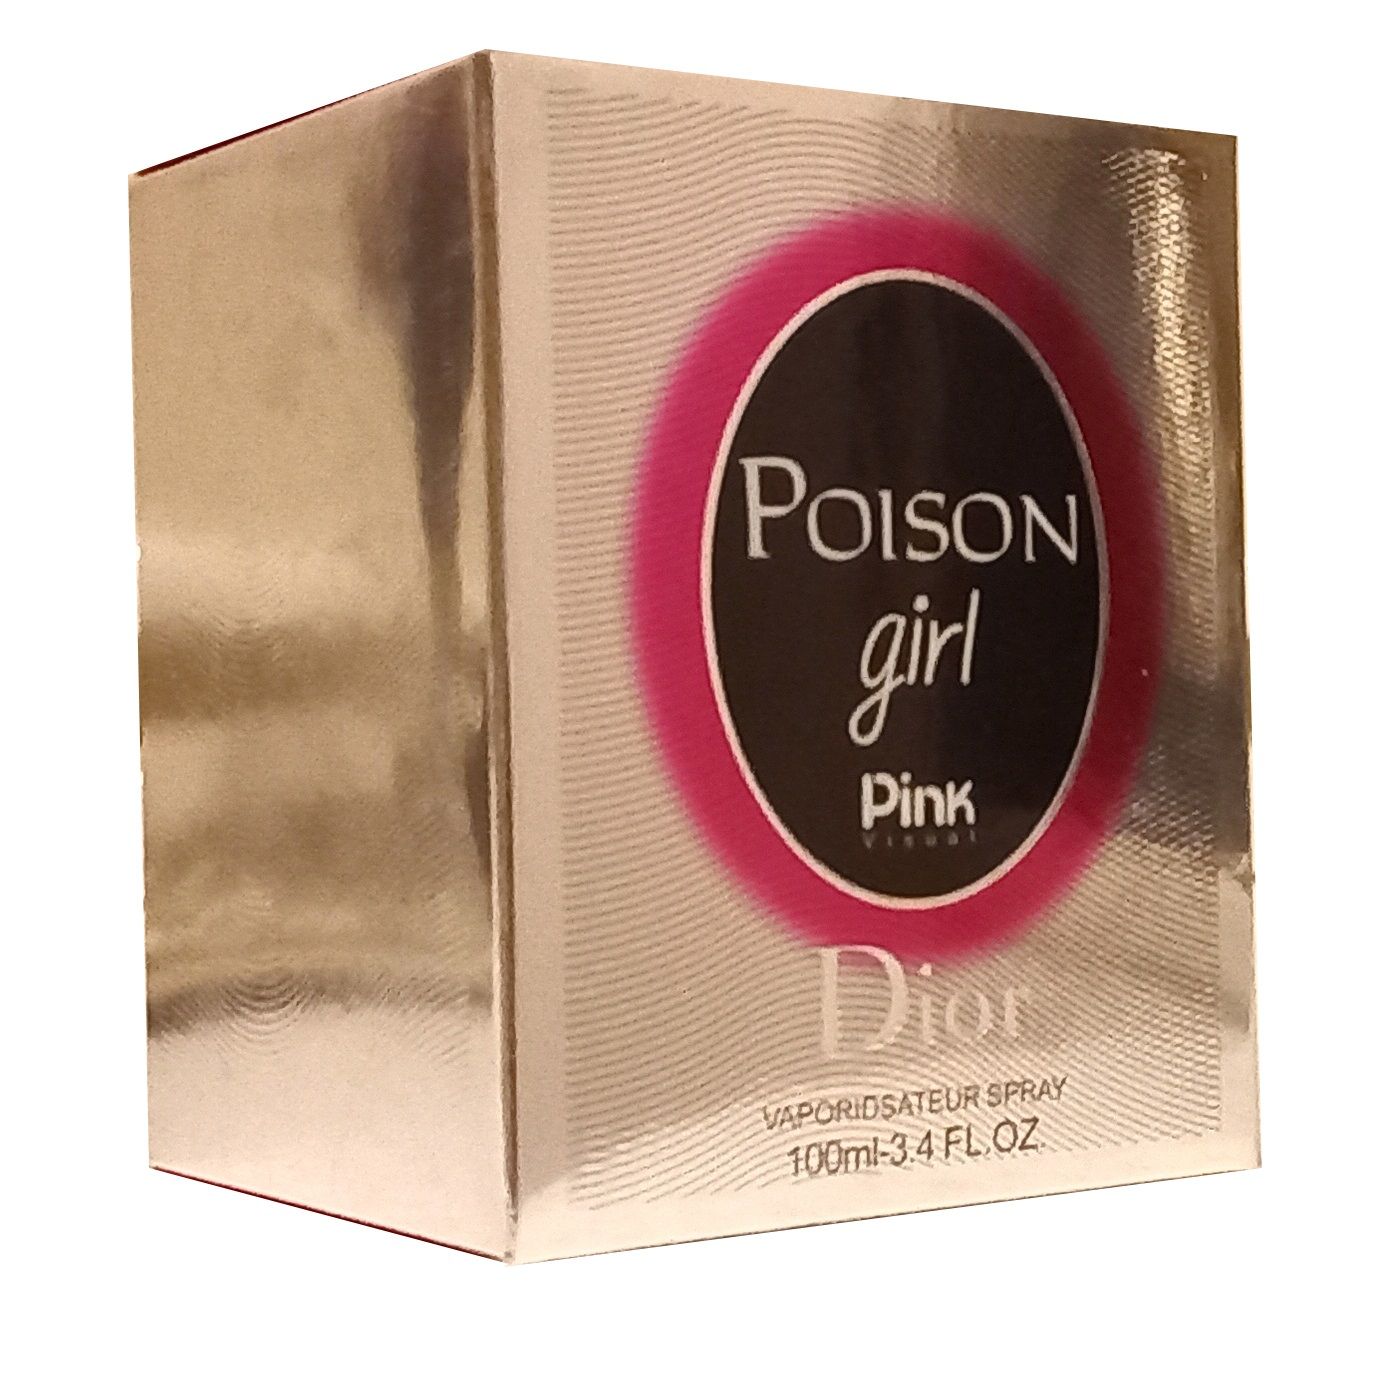 ادو پرفیوم زنانه پینک مدل Poison Girl حجم 100 میلی لیتر -  - 2